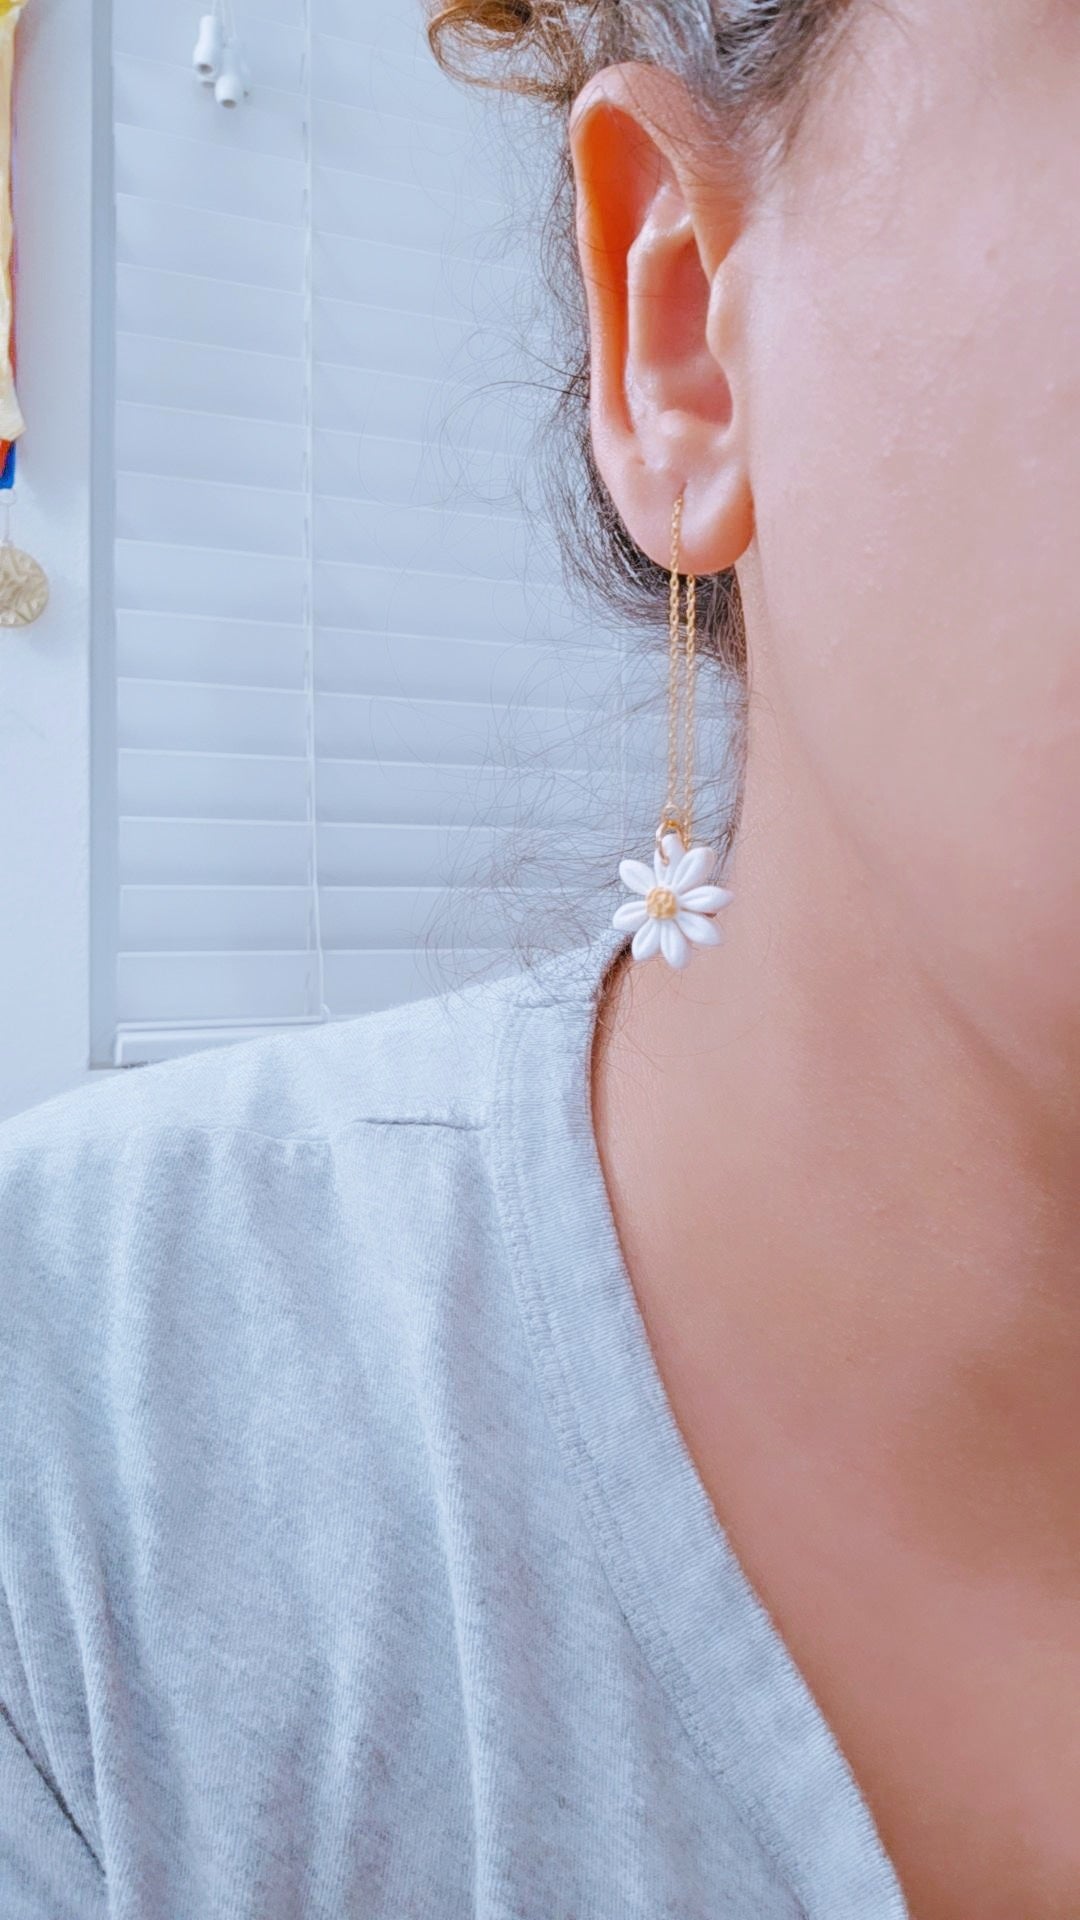 Daisy thread earrings